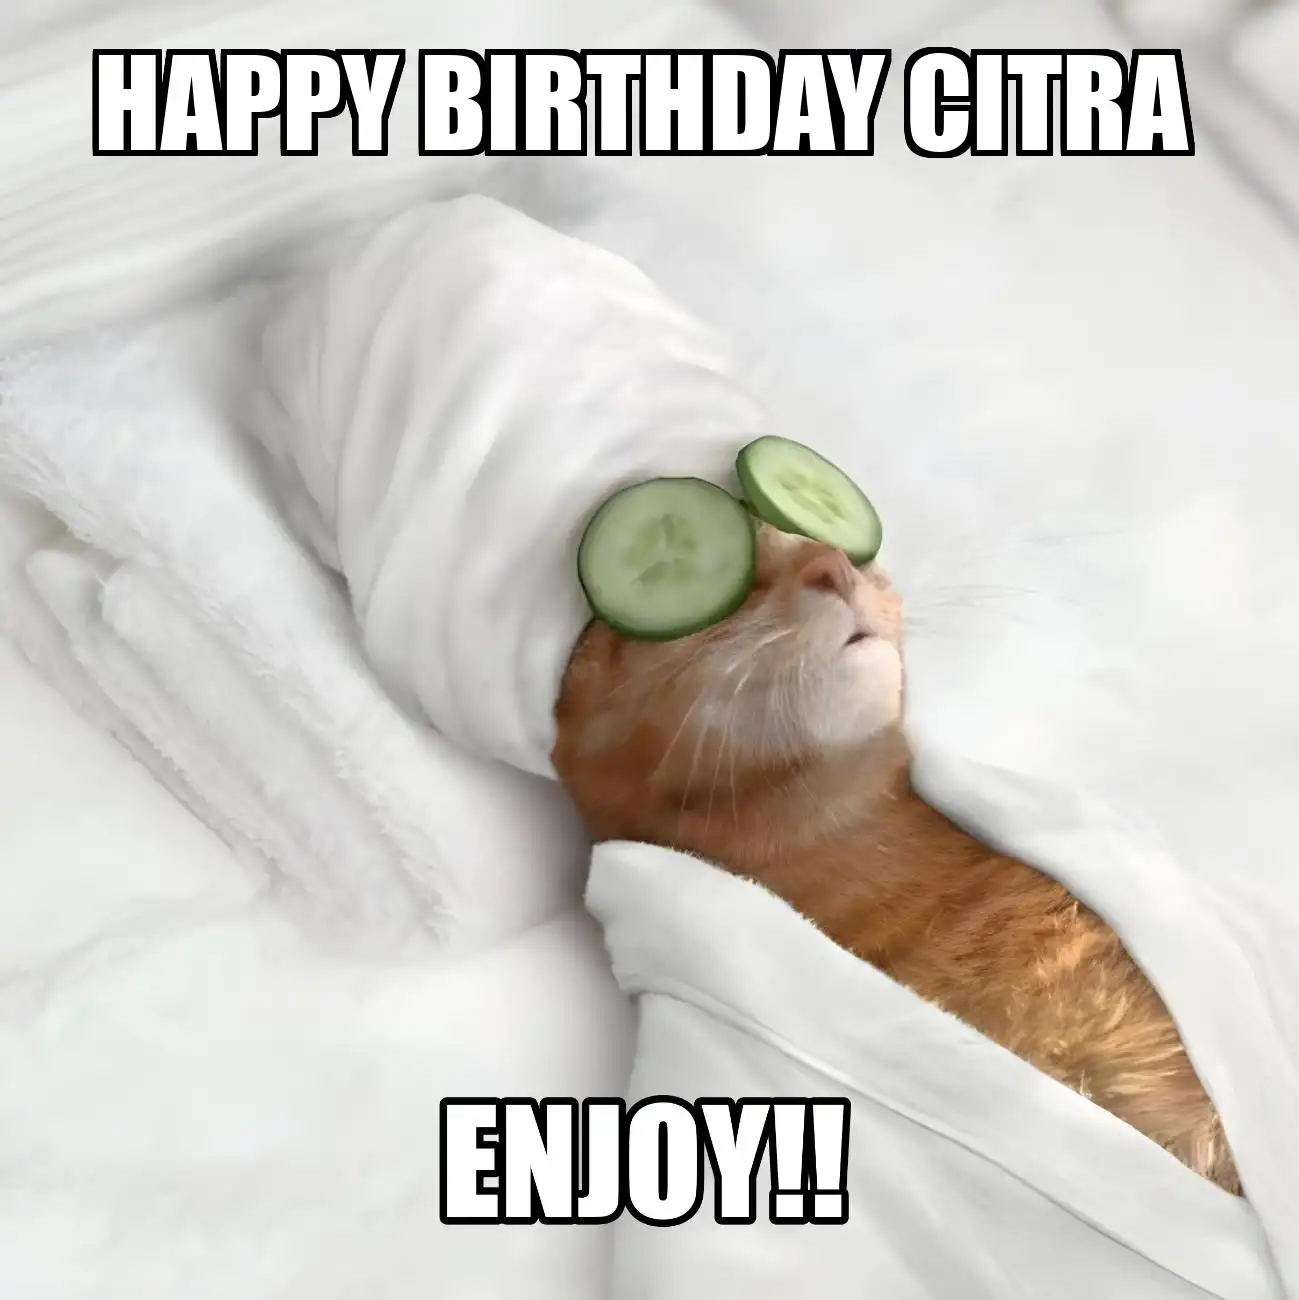 Happy Birthday Citra Enjoy Cat Meme